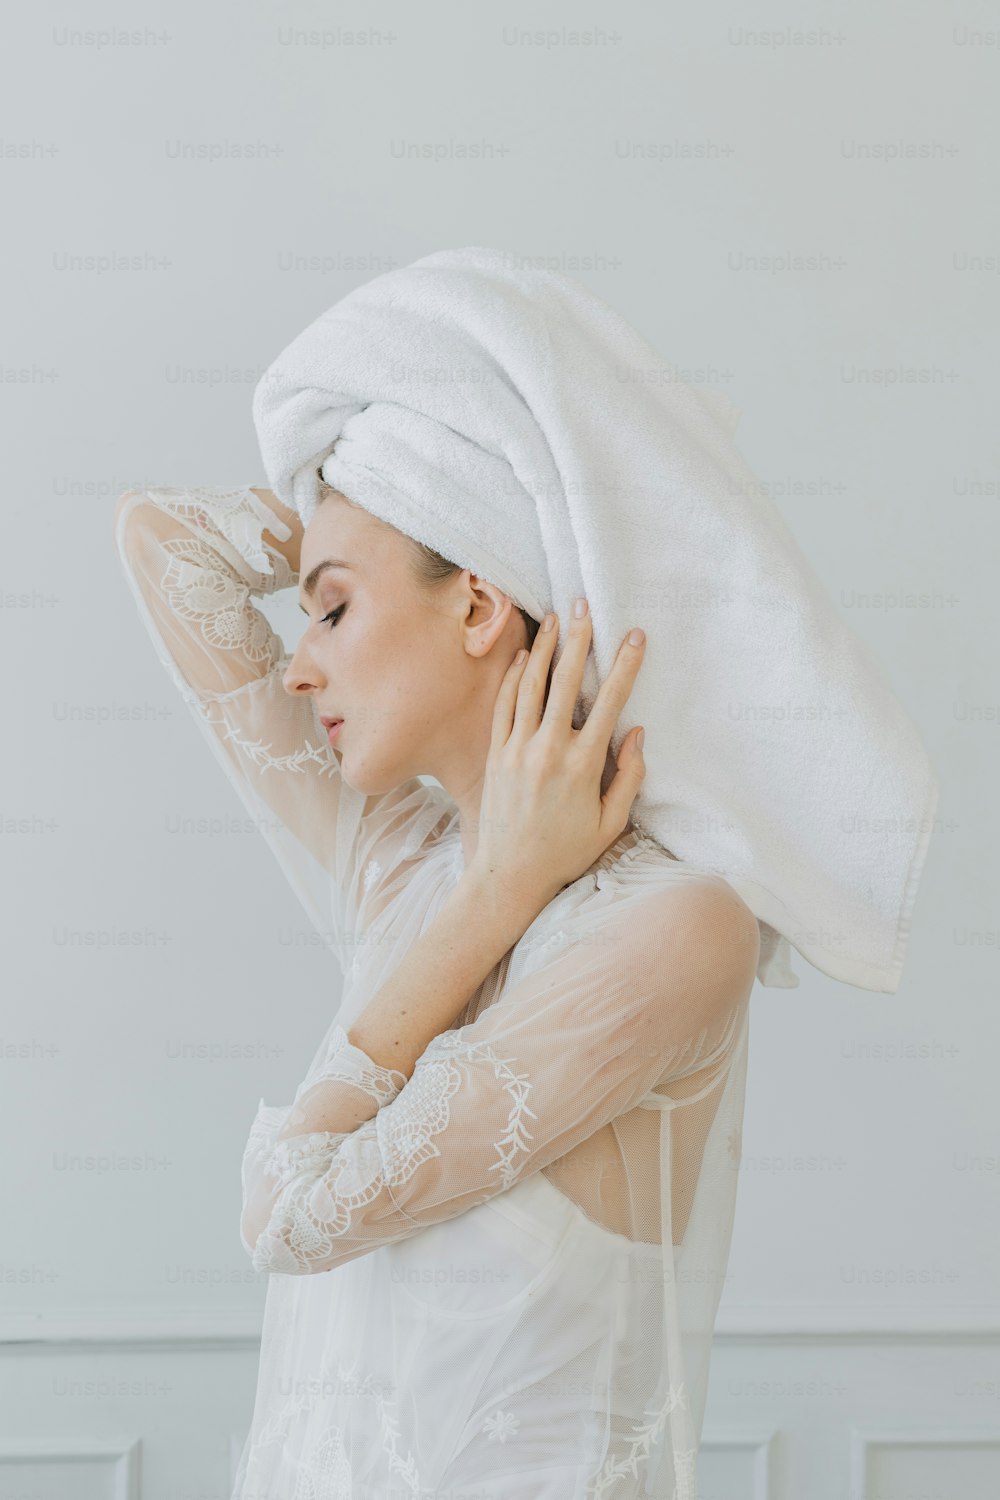 Una donna con un asciugamano in testa